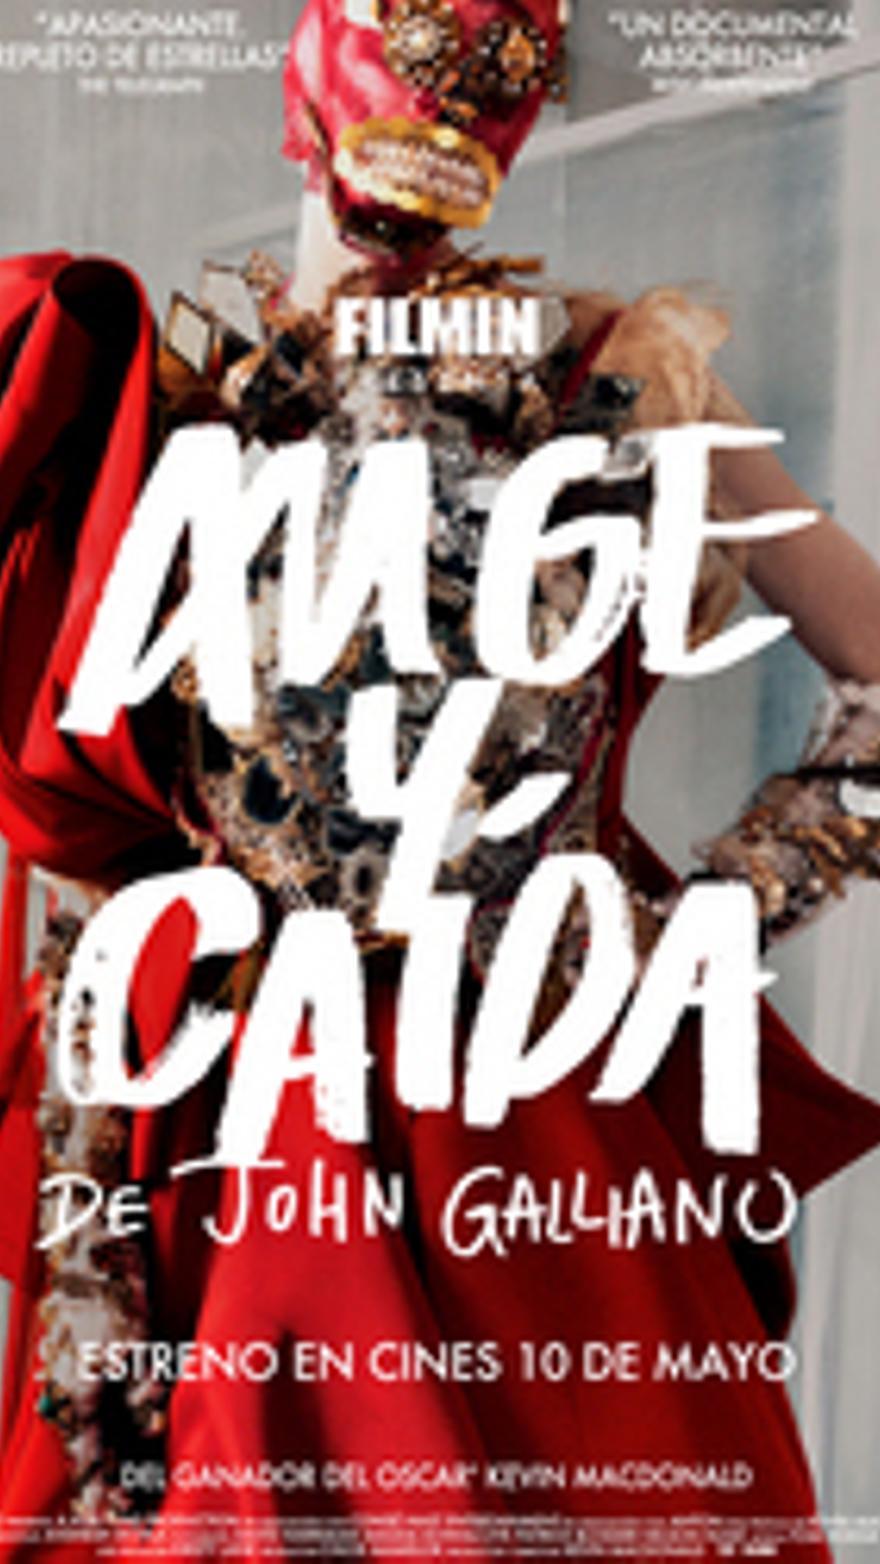 Auge y caída de John Galliano